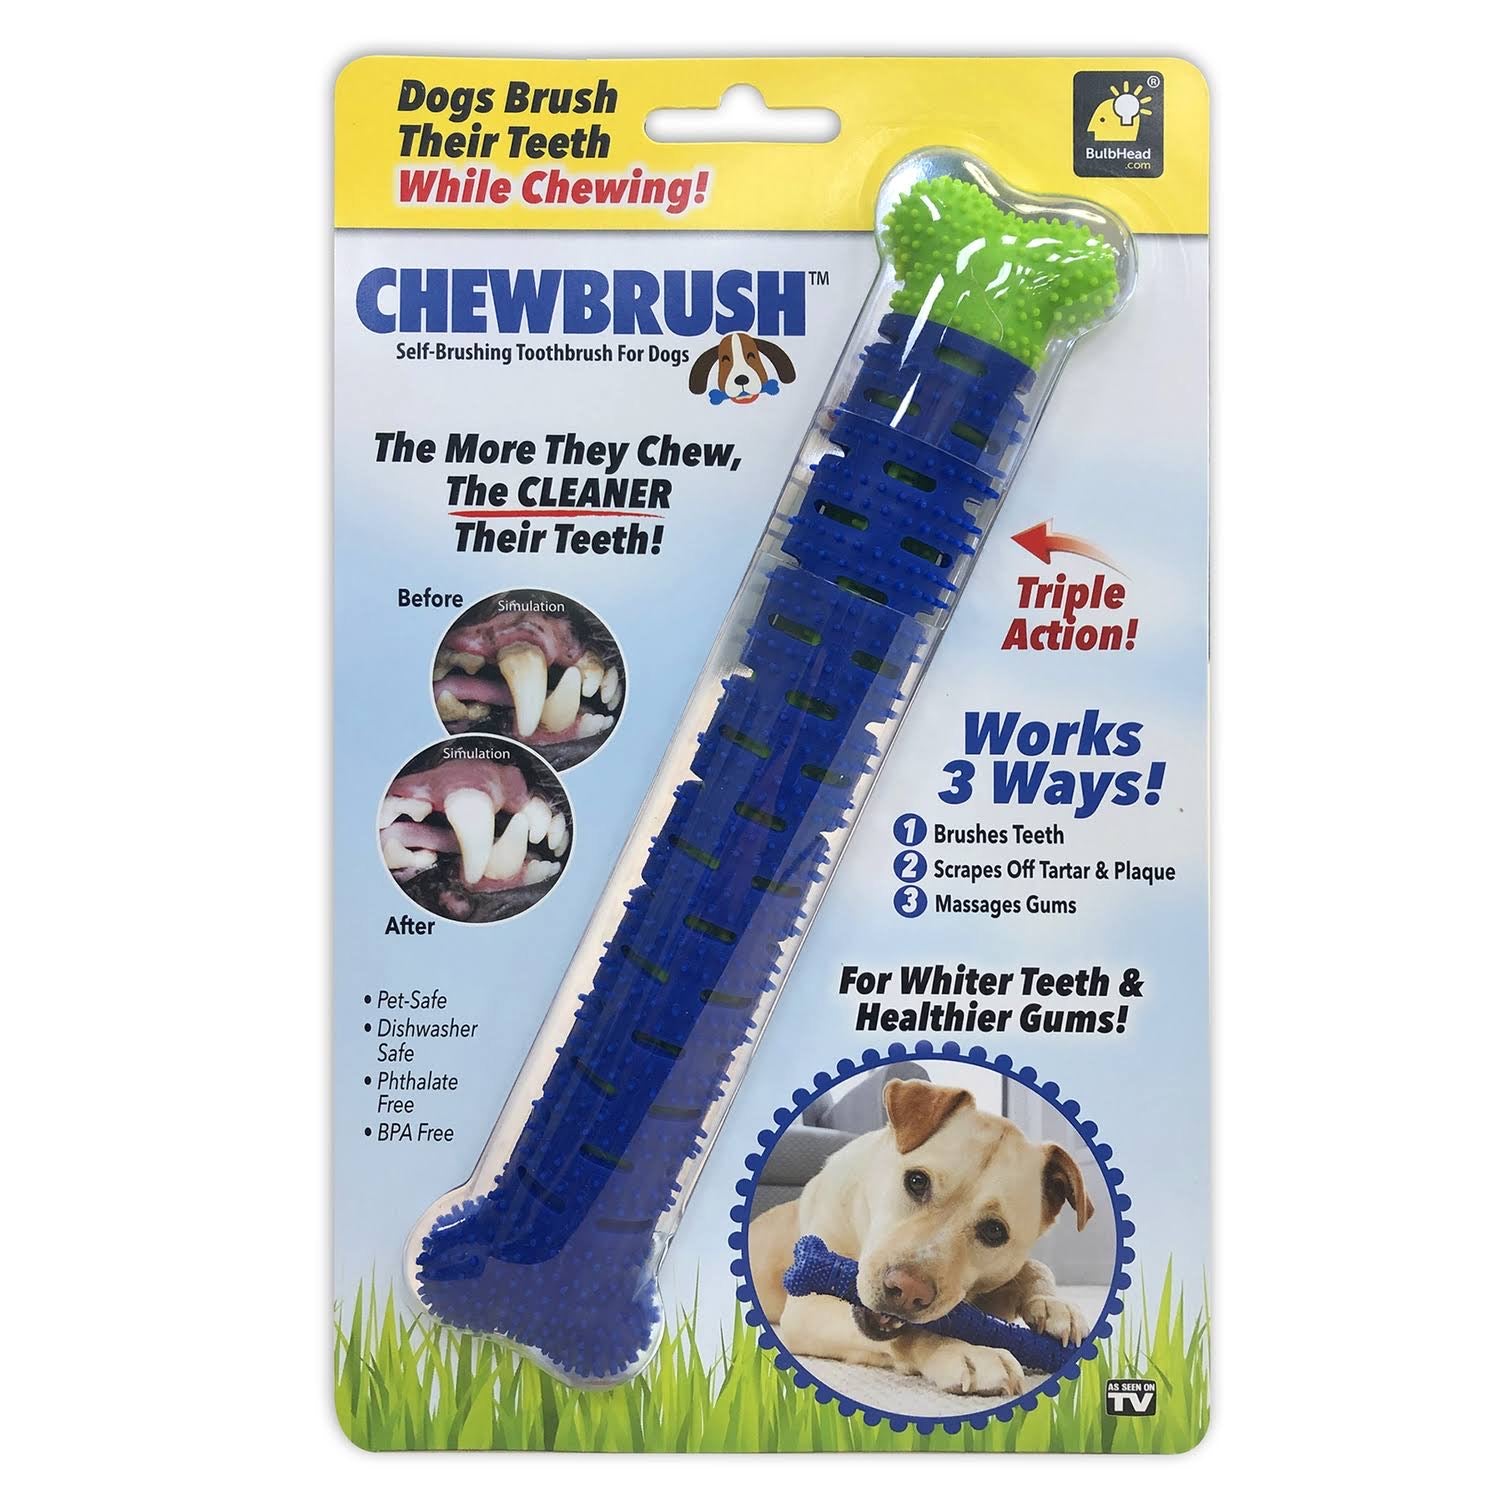 Chew Brush Self-Brushing Toothbrush - Home Gadgets